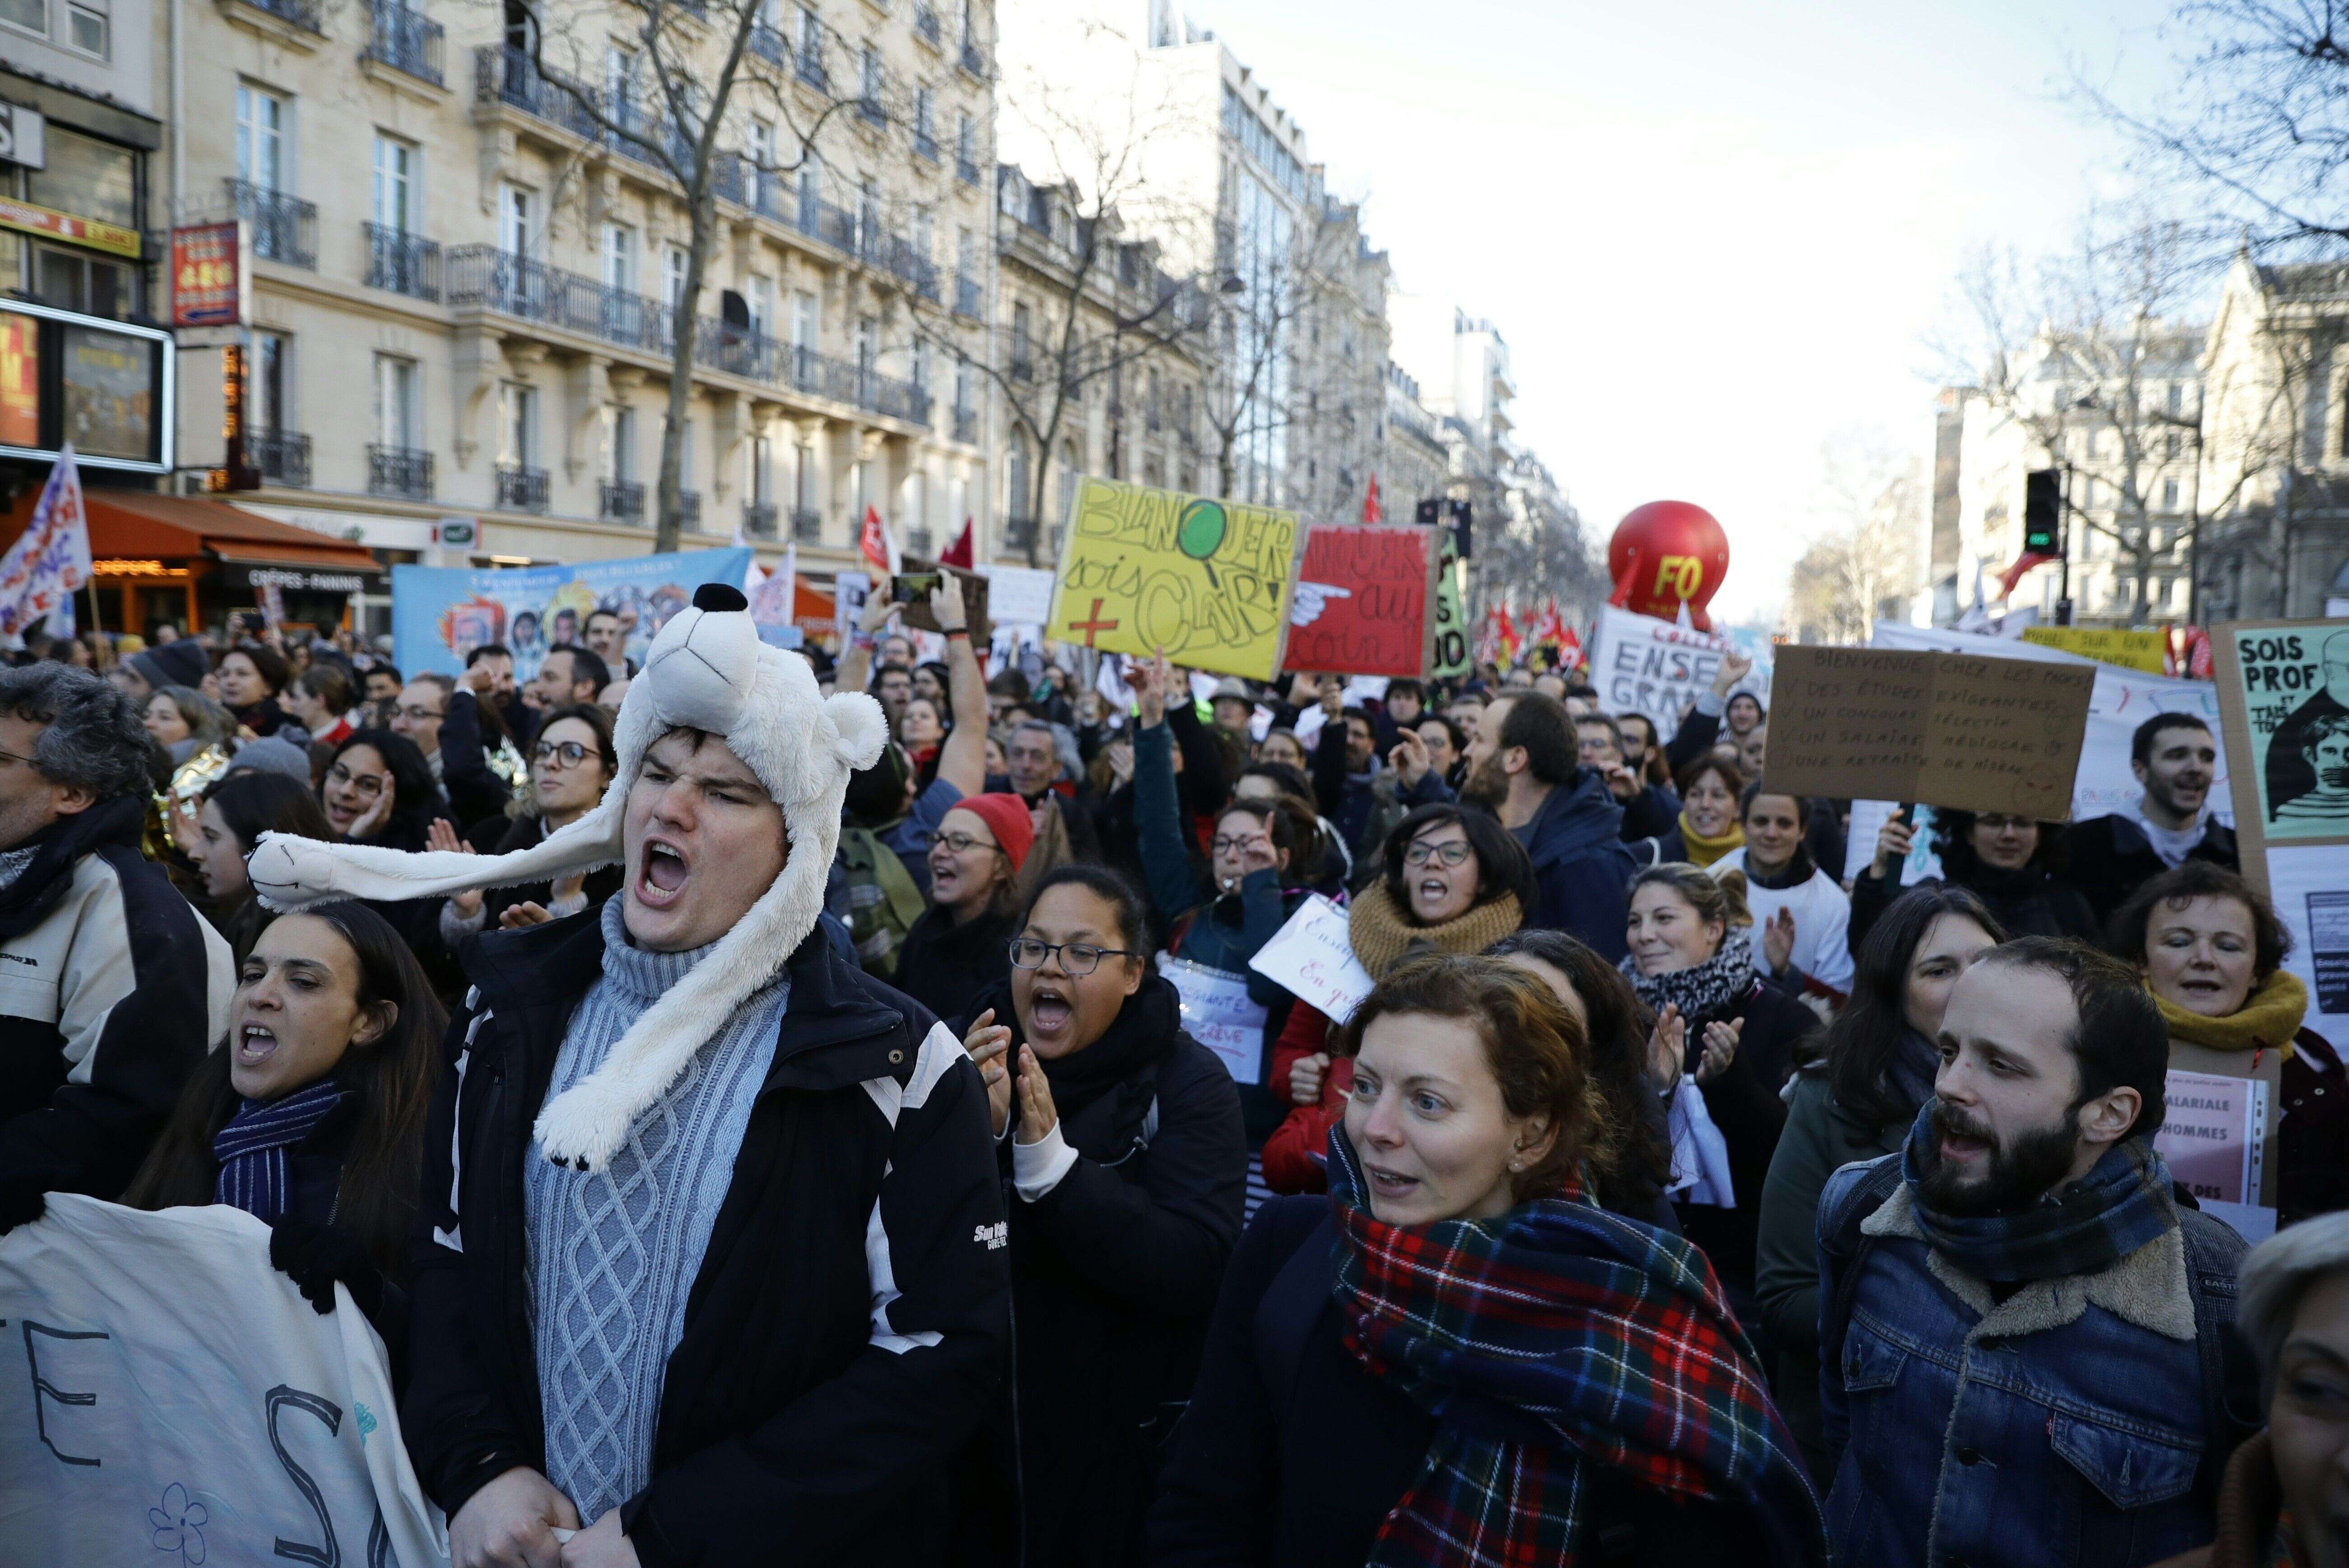 Des manifestants le 16 janvier 2020 à Paris, alors que la grève des transports entre dans son 43ème jour.